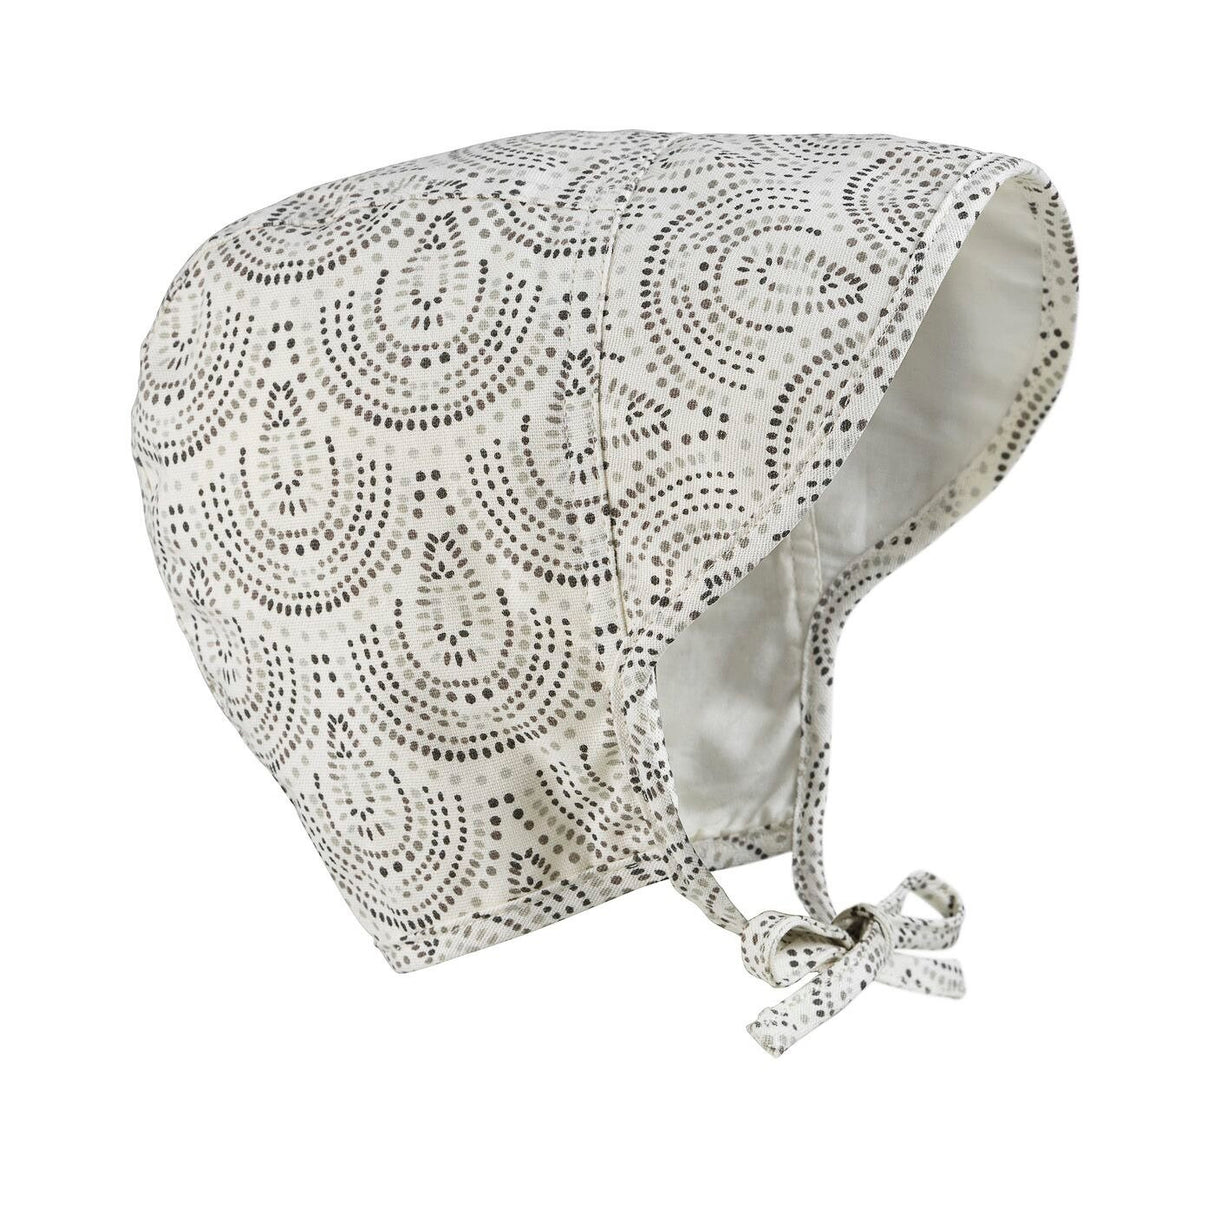 Elegancka i wygodna czapka Baby Bonnet dla noworodka z przewiewnej bawełny, idealna dla dzieci na lato.